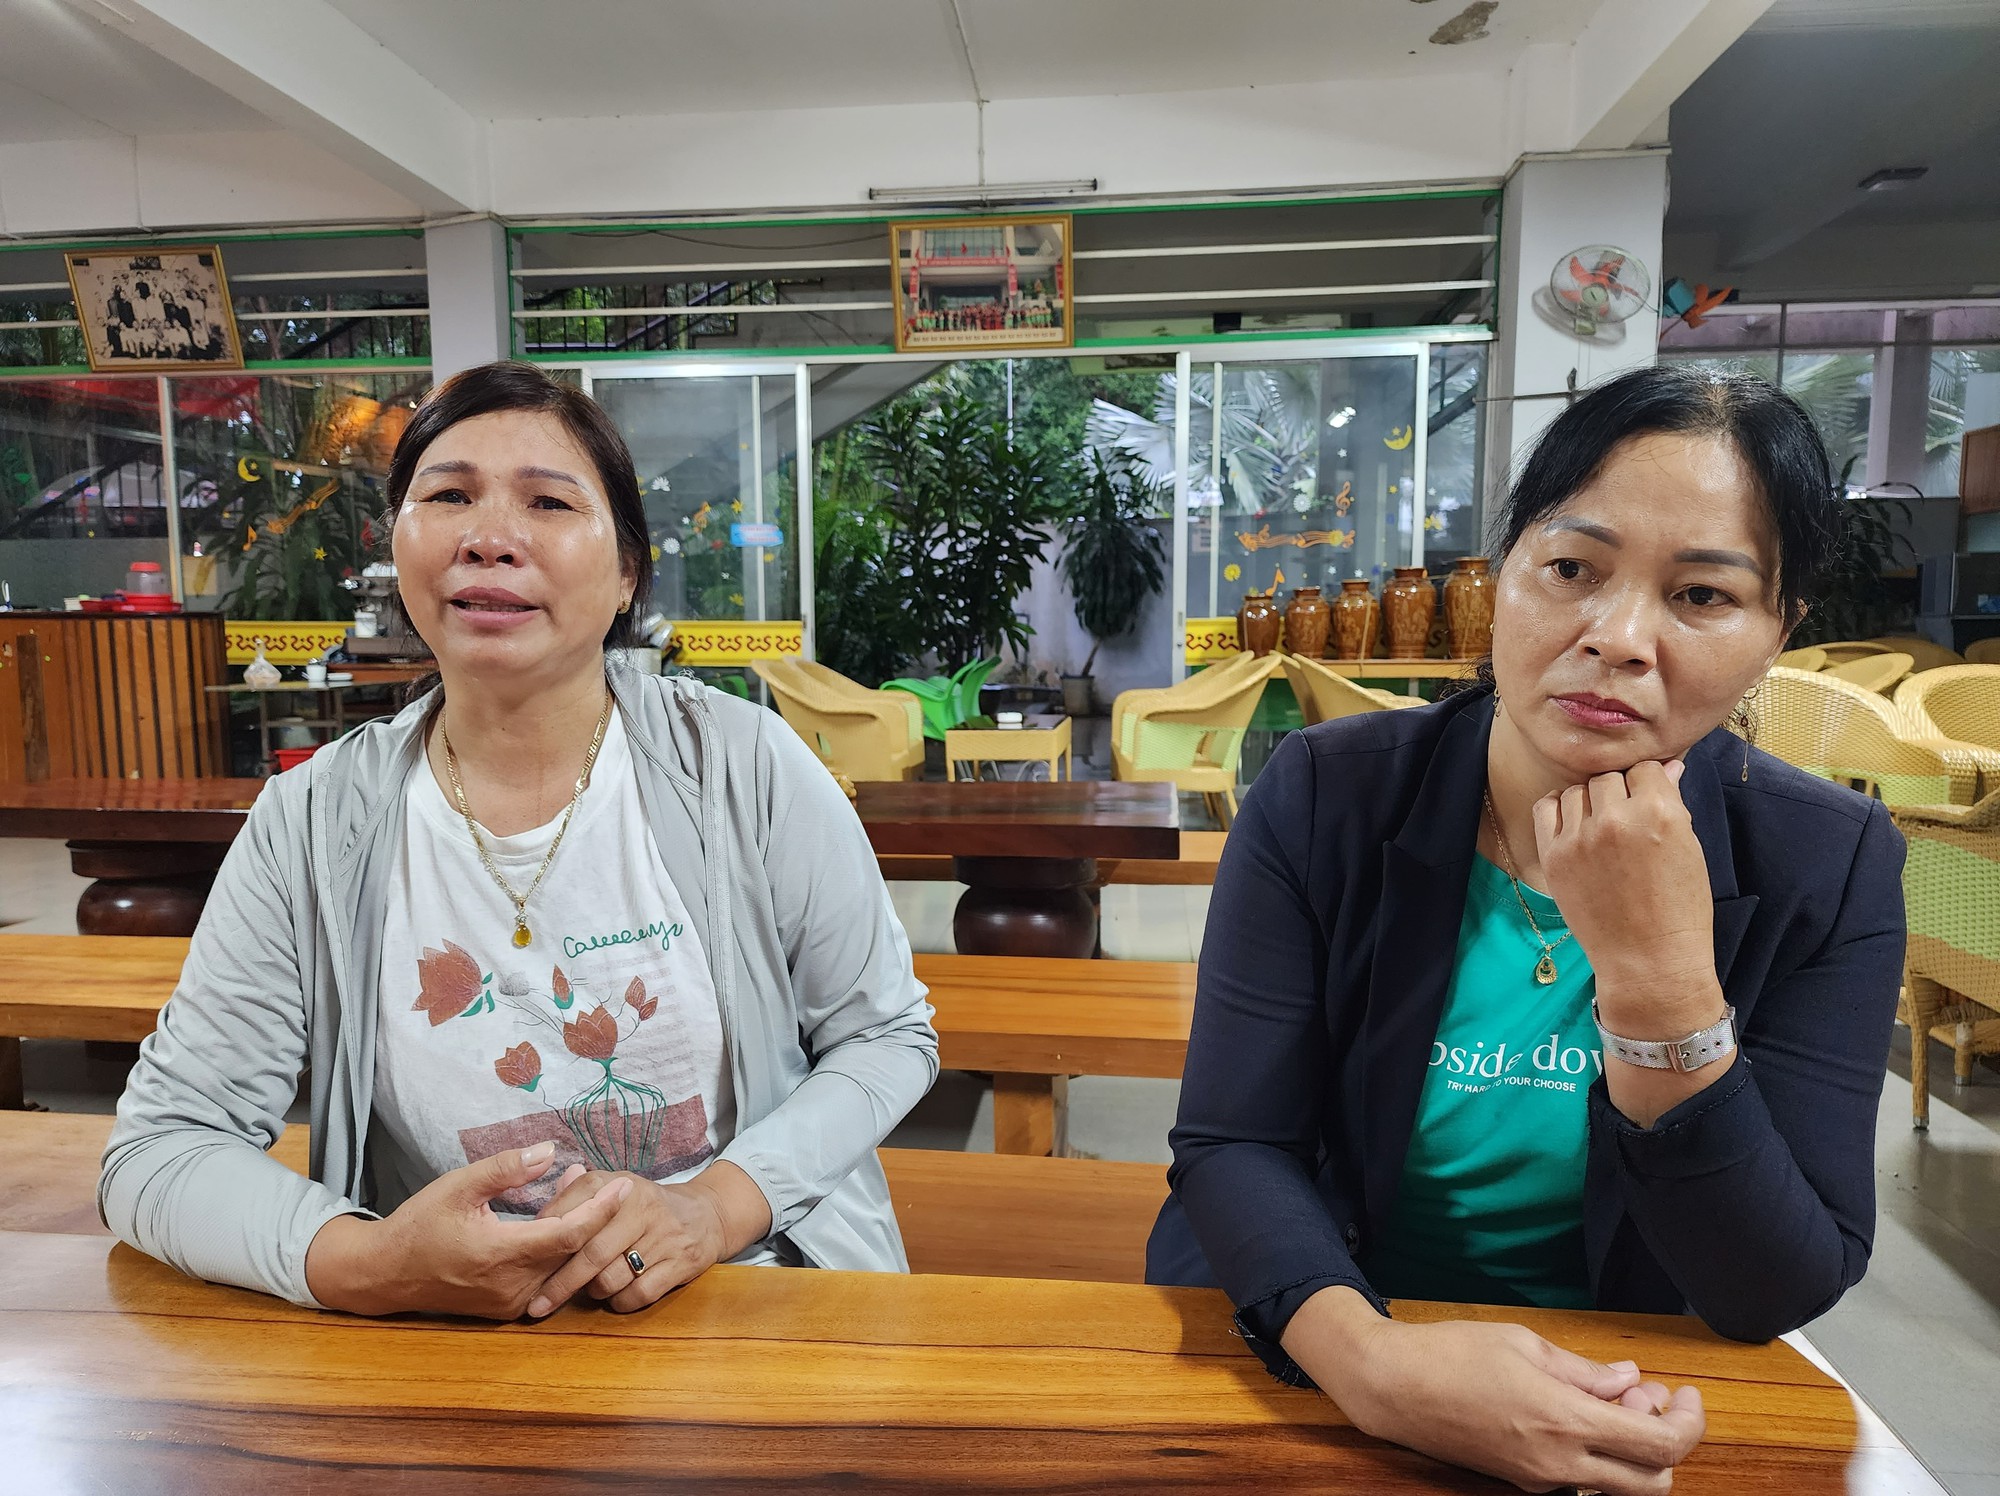 Bức ảnh 2 người mẹ khóc cạn nước mắt khi con bị bán sang Campuchia chắc chắn sẽ khiến ai cũng xót xa và thấu hiểu được sự đau đớn của họ. Hãy dành thời gian để ngắm nhìn bức ảnh đầy ý nghĩa này, hãy cùng cảm nhận và chia sẻ nỗi đau của họ.